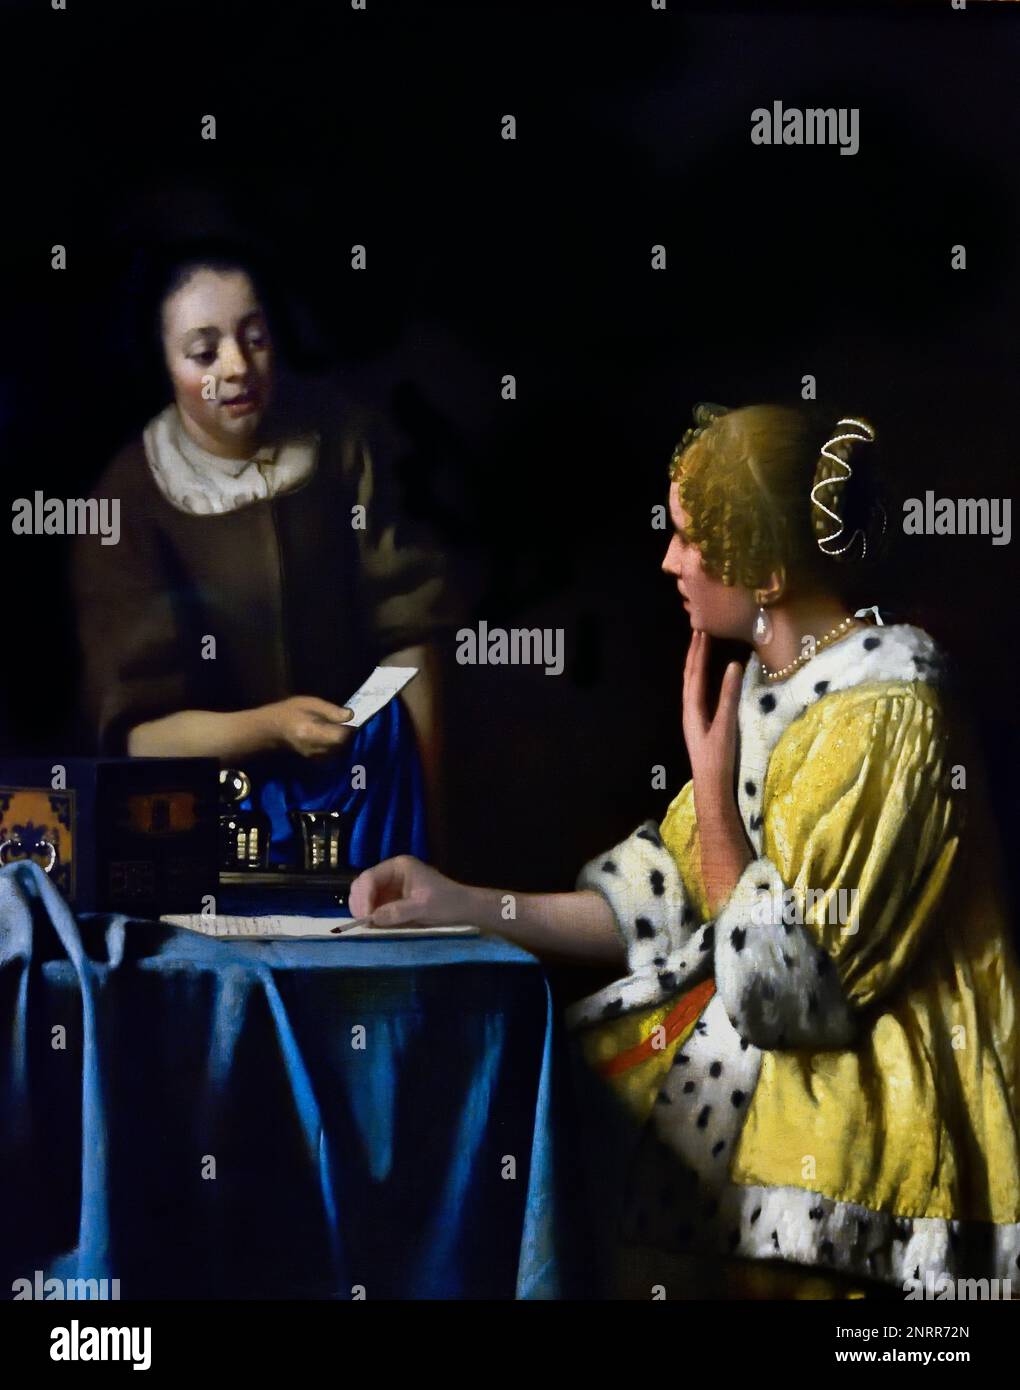 Mistress and Maid 1664-1667 von Johannes Vermeer oder Jan Vermeer 1632 - 1675, Delft, Niederlande, Niederländisch, Holland, (Holländischer Maler im Goldenen Zeitalter, einer der größten Maler des 17. Jahrhunderts. Bevorzugte zeitlose, gedämpfte Momente, bleibt rätselhaft, unnachahmliches Farbschema und verwirrender Lichtinhalt) Stockfoto